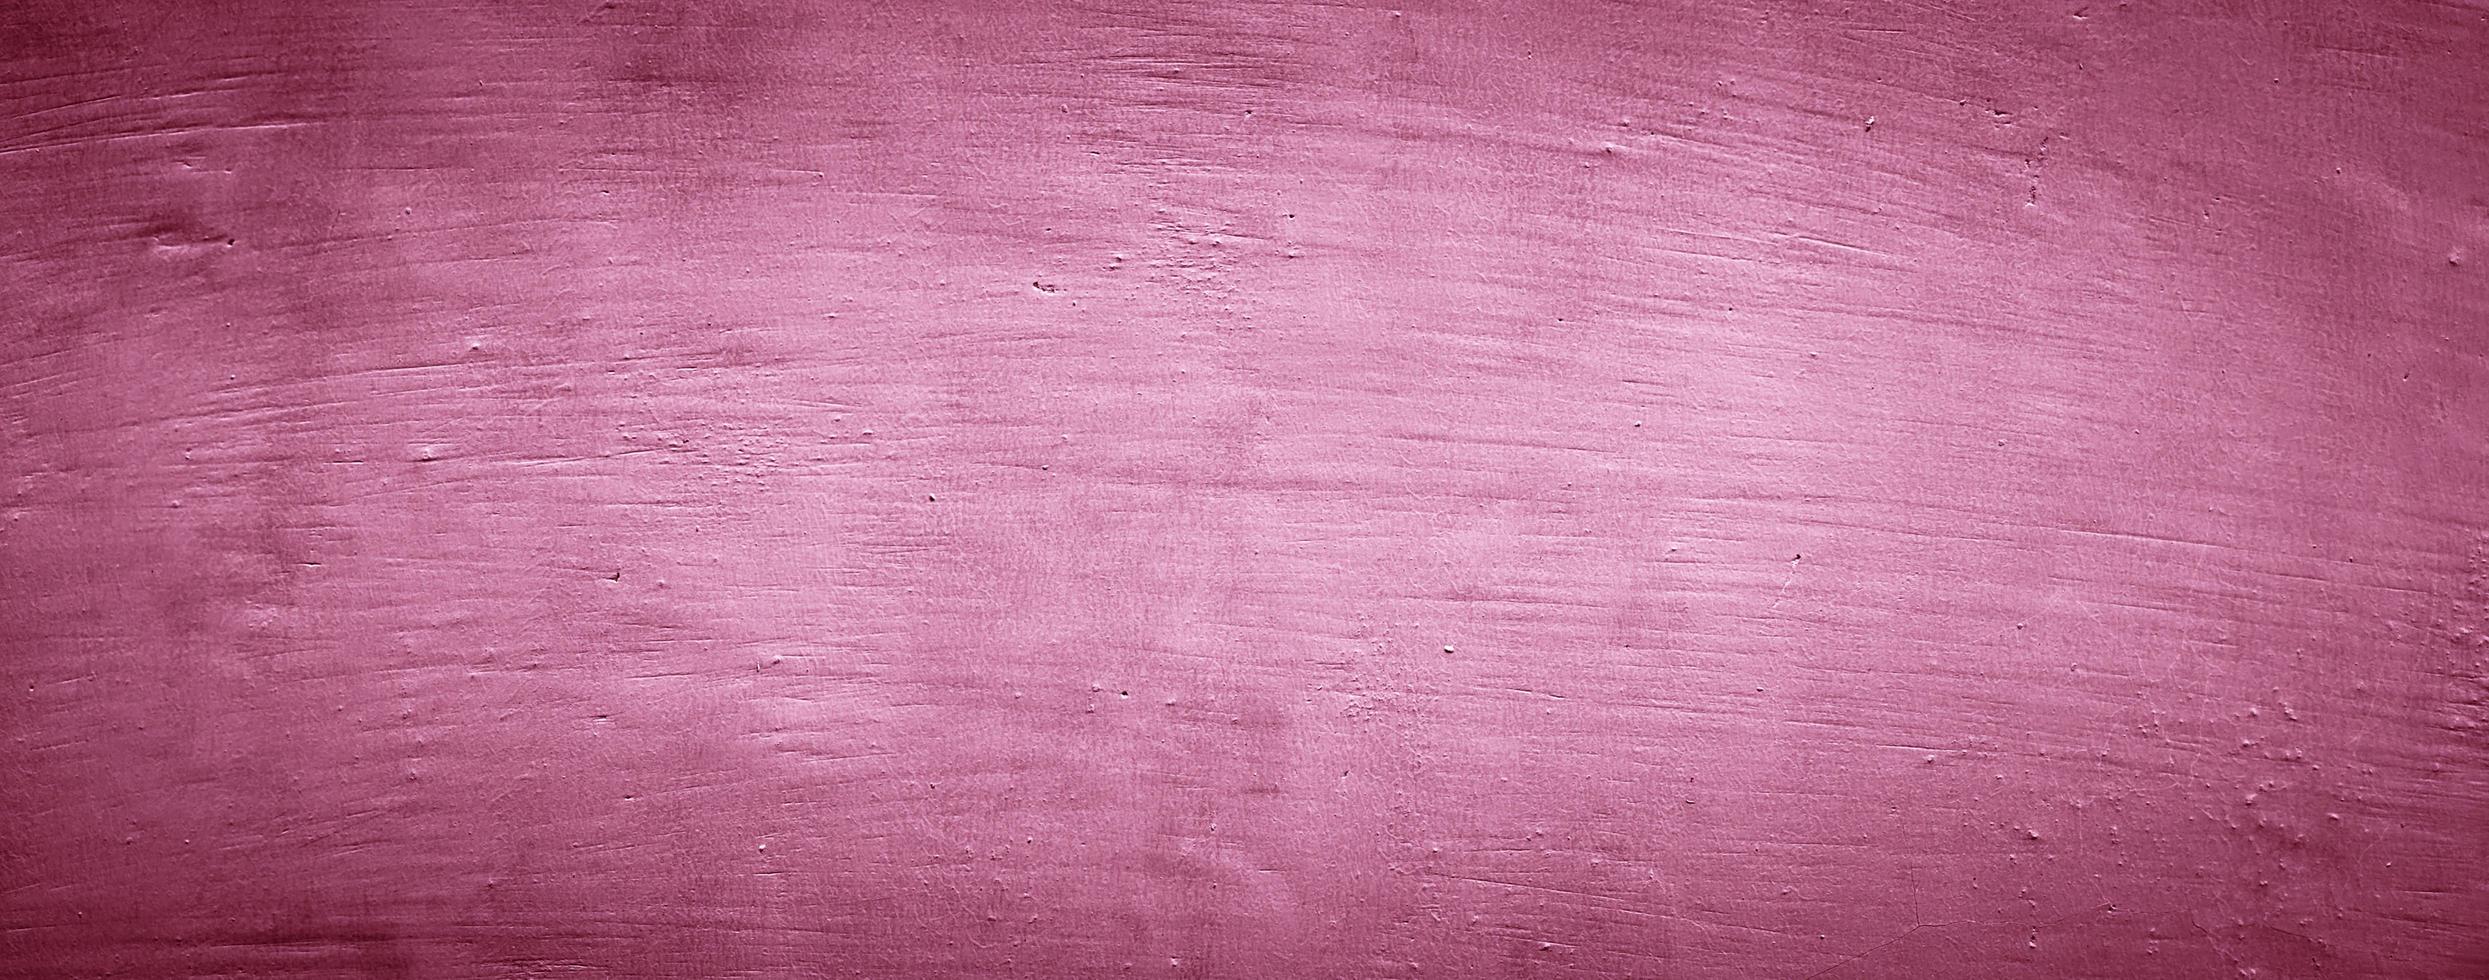 rosa viola trama astratta sfondo del muro di cemento foto